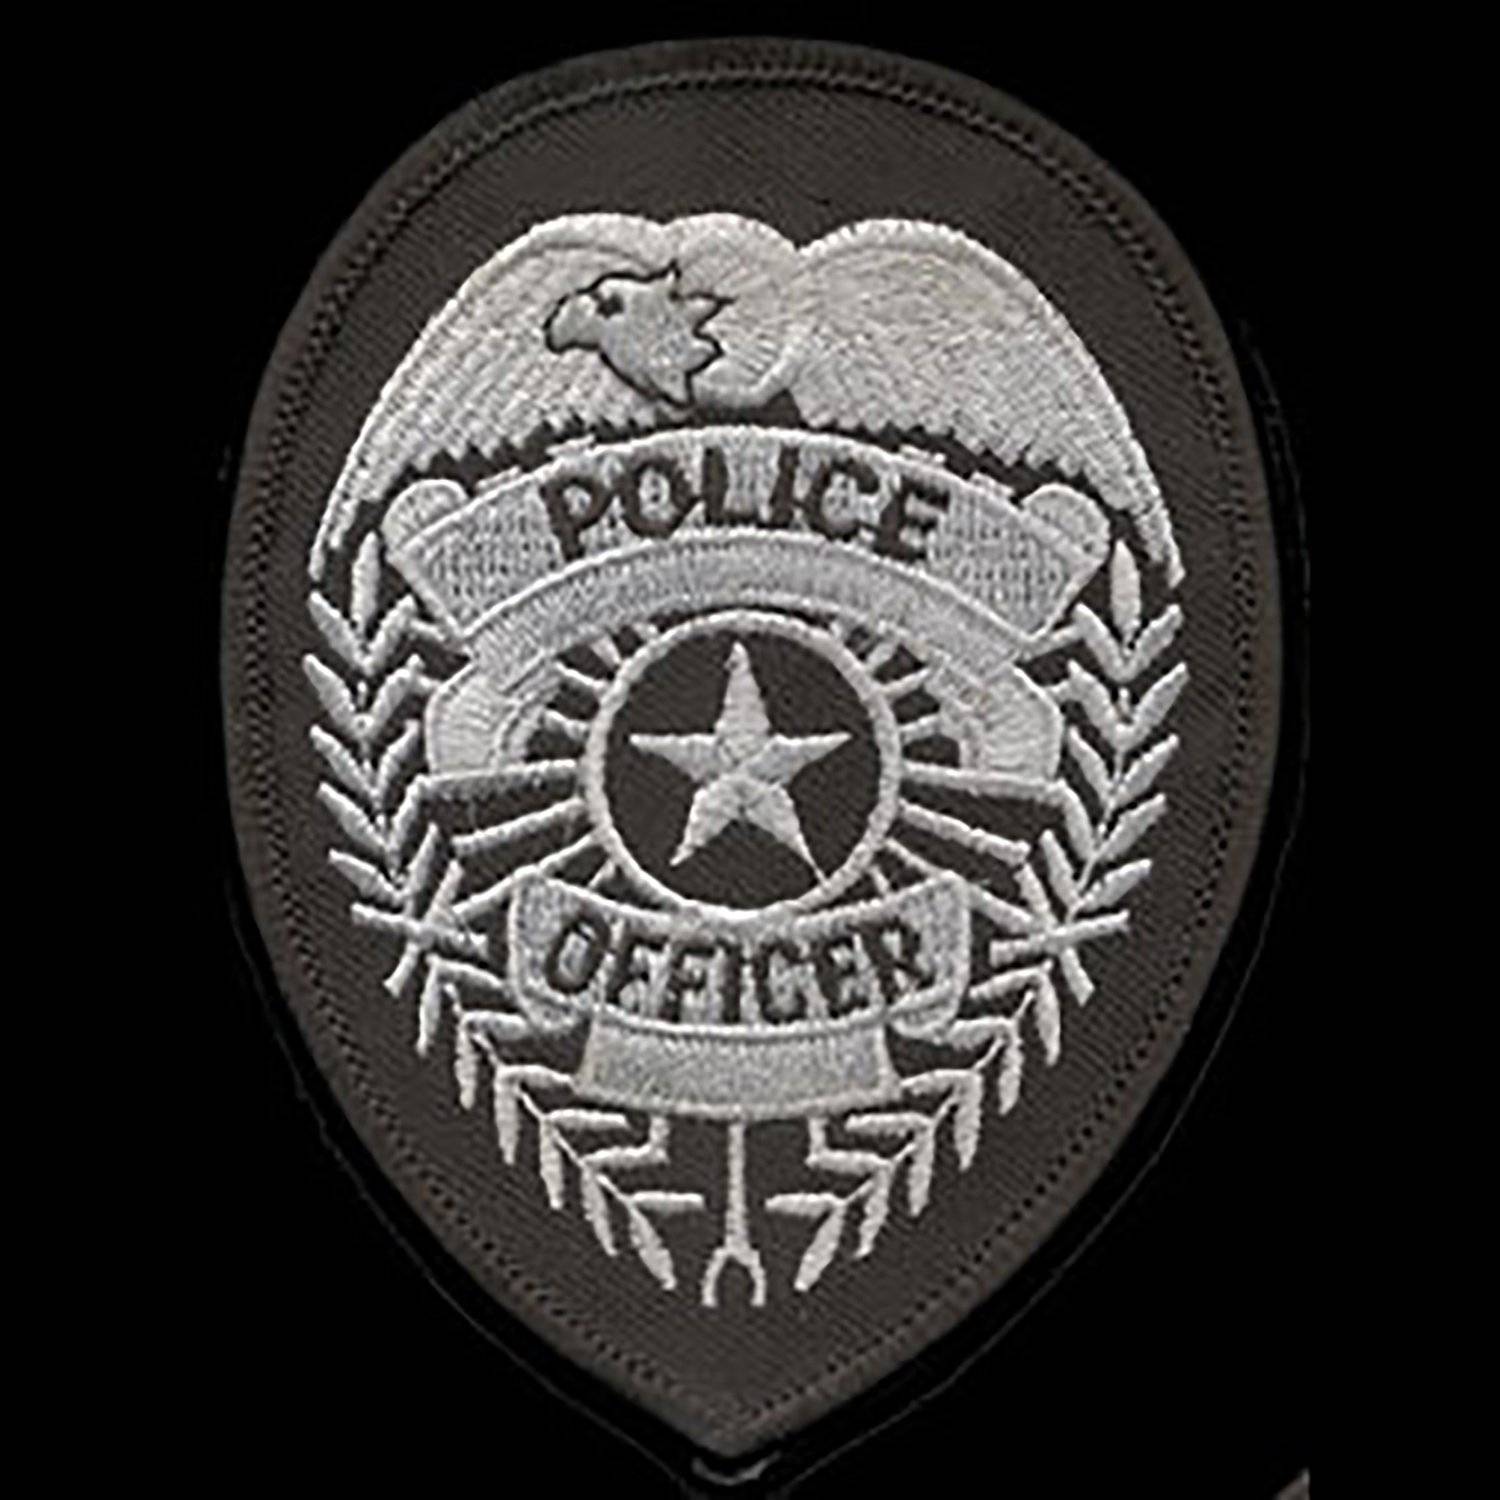 ~35 Best Value 1-1/2" Display Stands For Fire Police EMT Rescue Badges Badge 